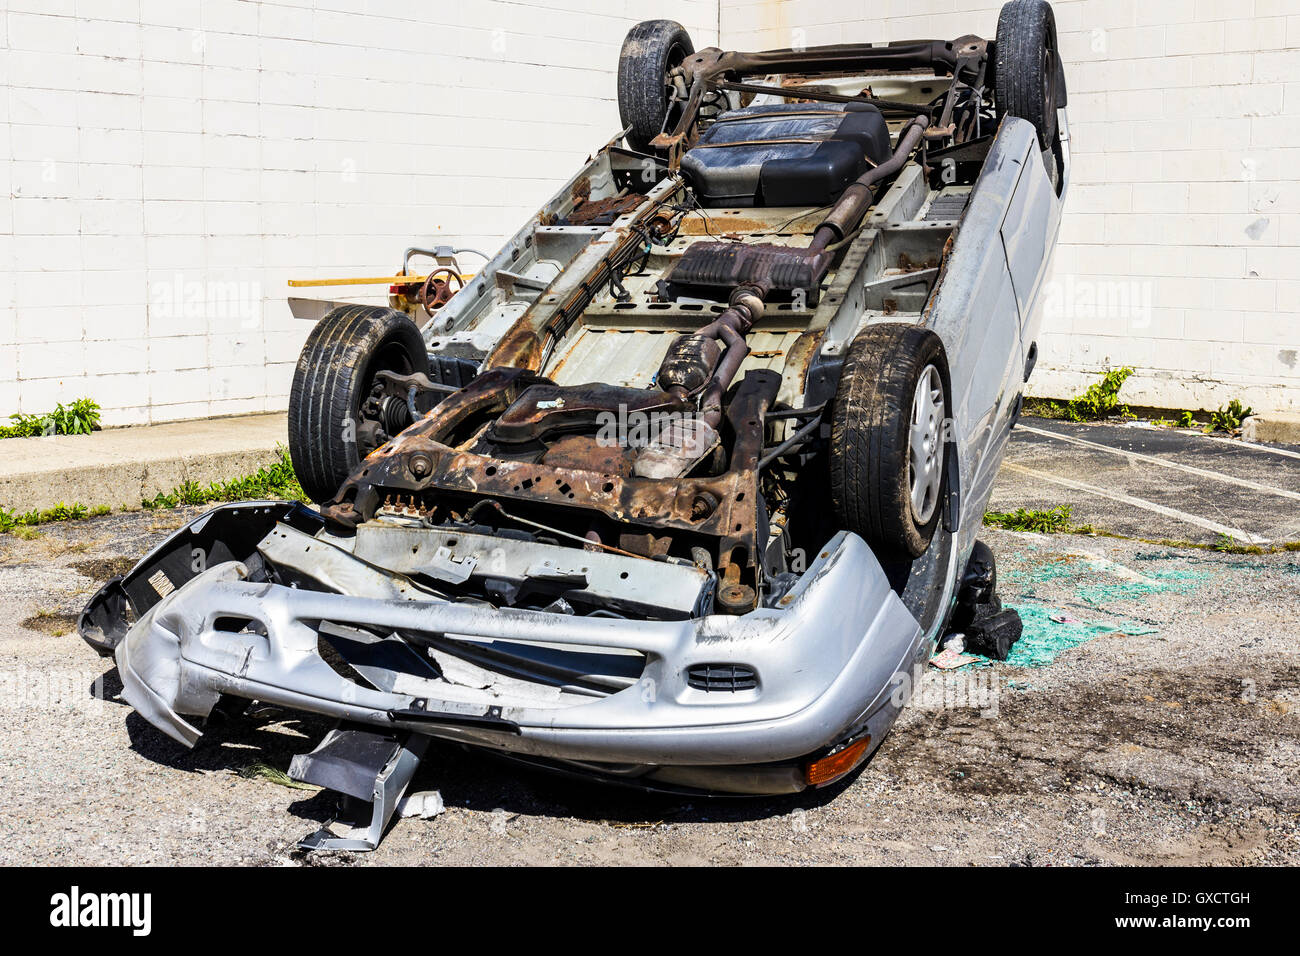 Indianapolis - Circa 30 Septembre 2016 : vus s'automobile après un accident en état d'ébriété II Banque D'Images